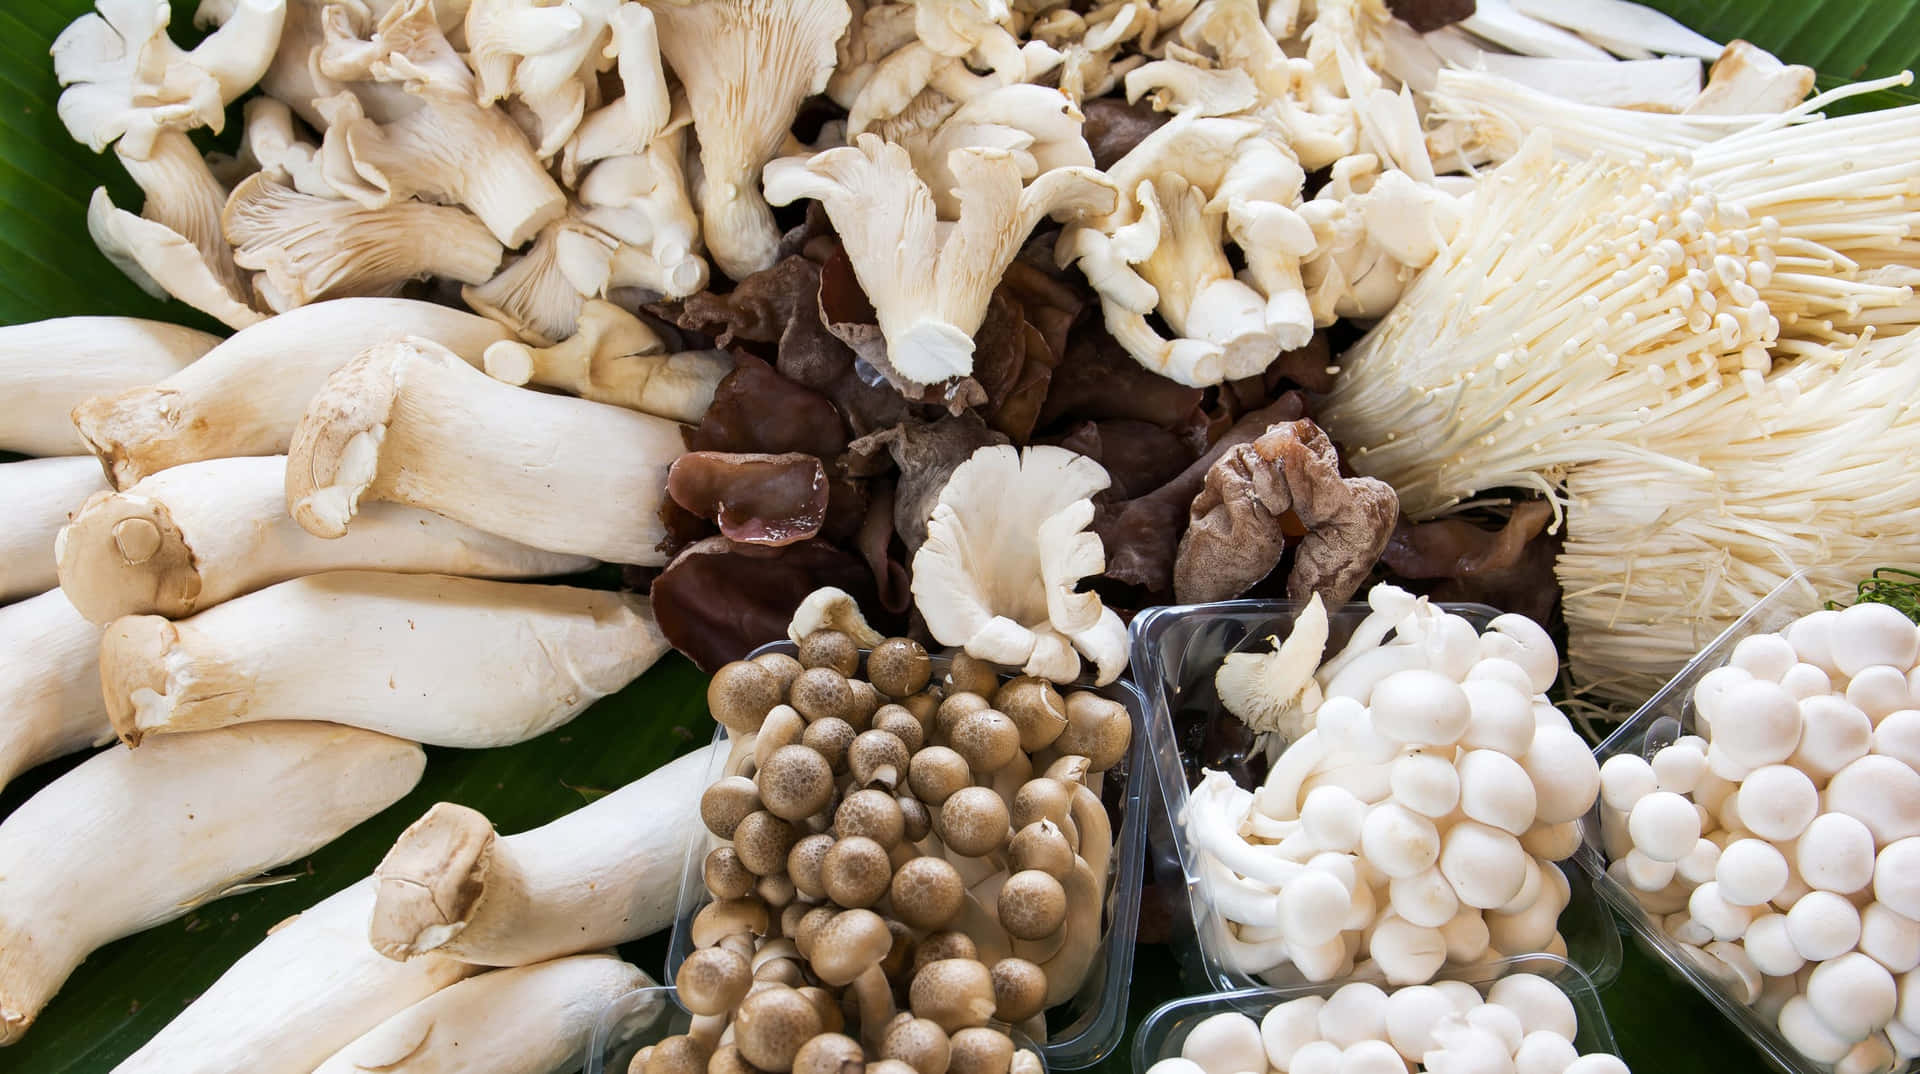 A Diversity of Mushroom Types